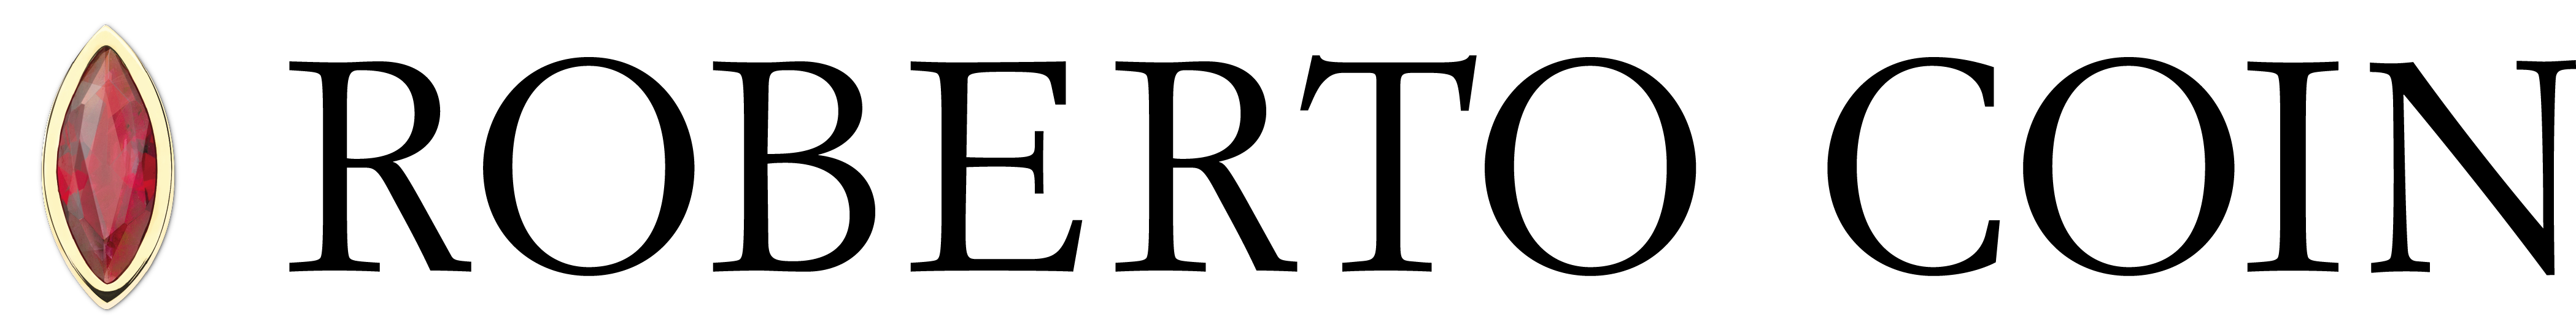 Roberto Coin Logo